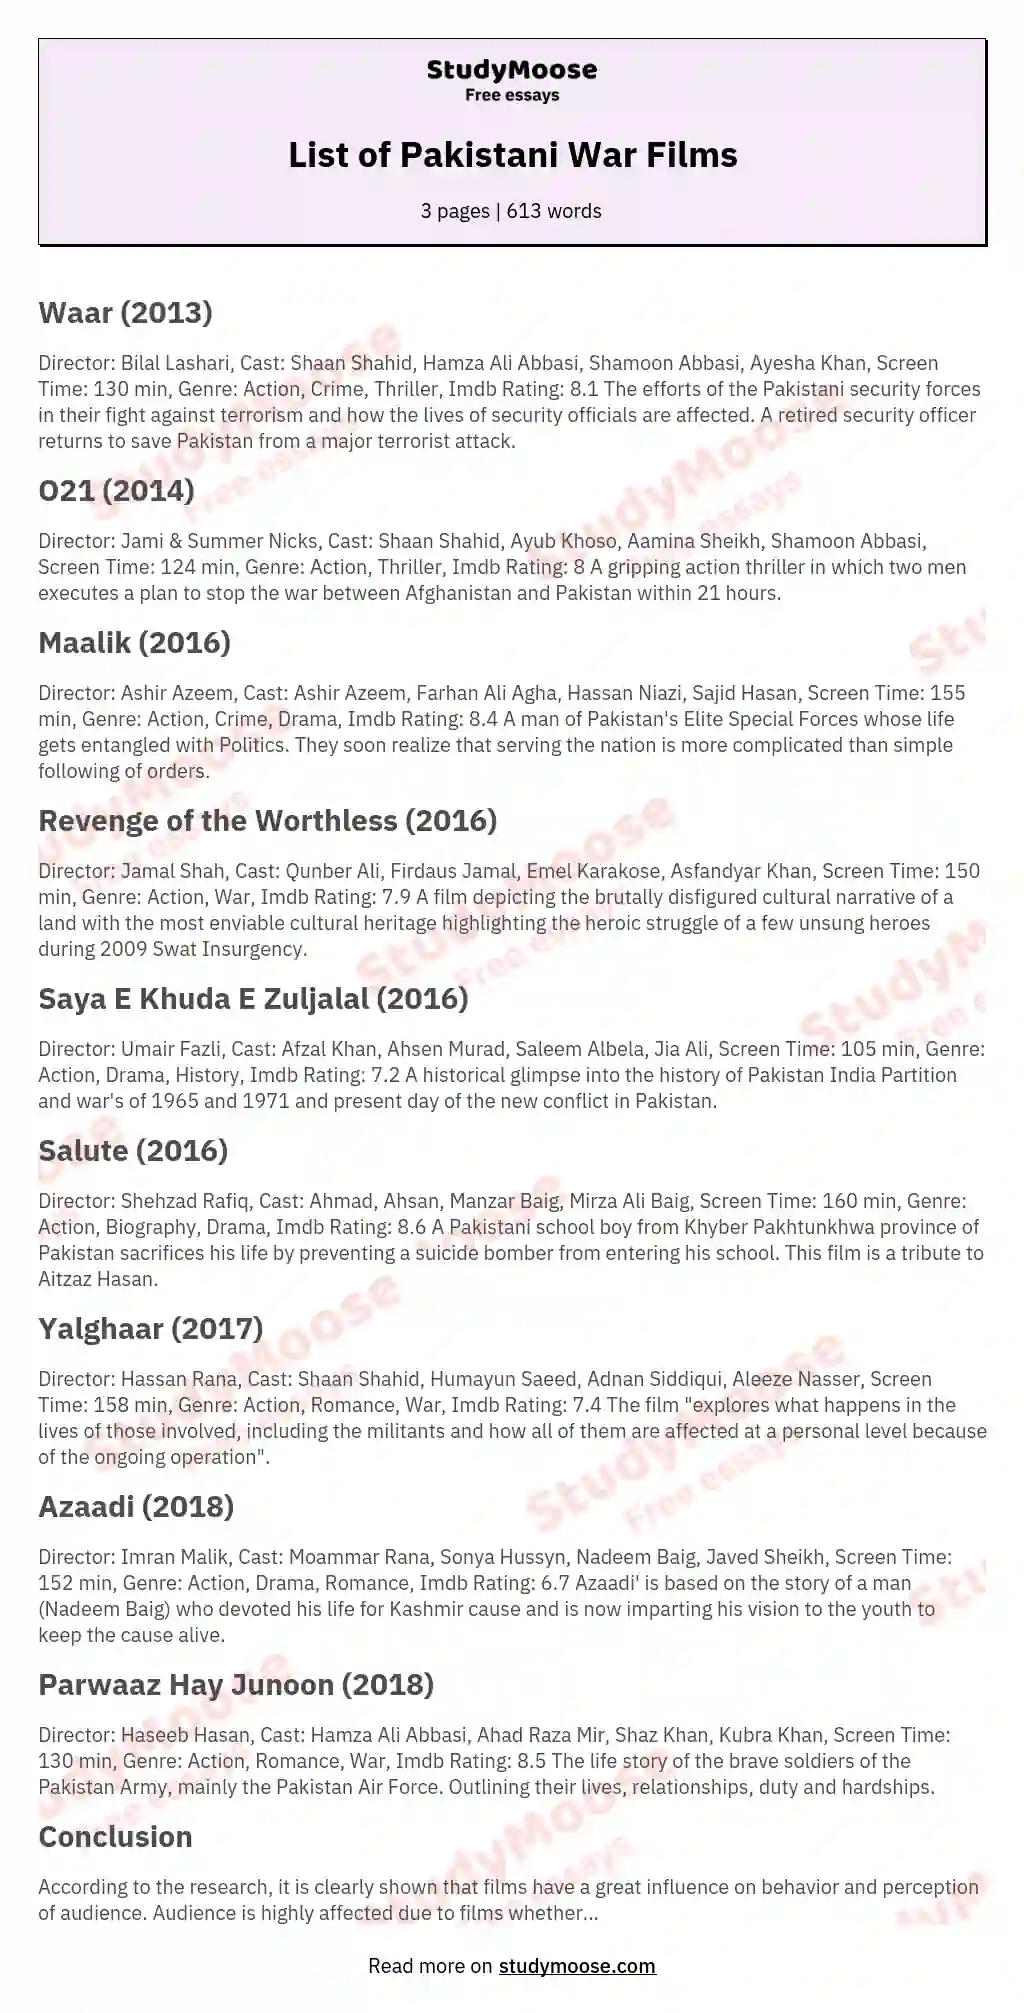 List of Pakistani War Films essay